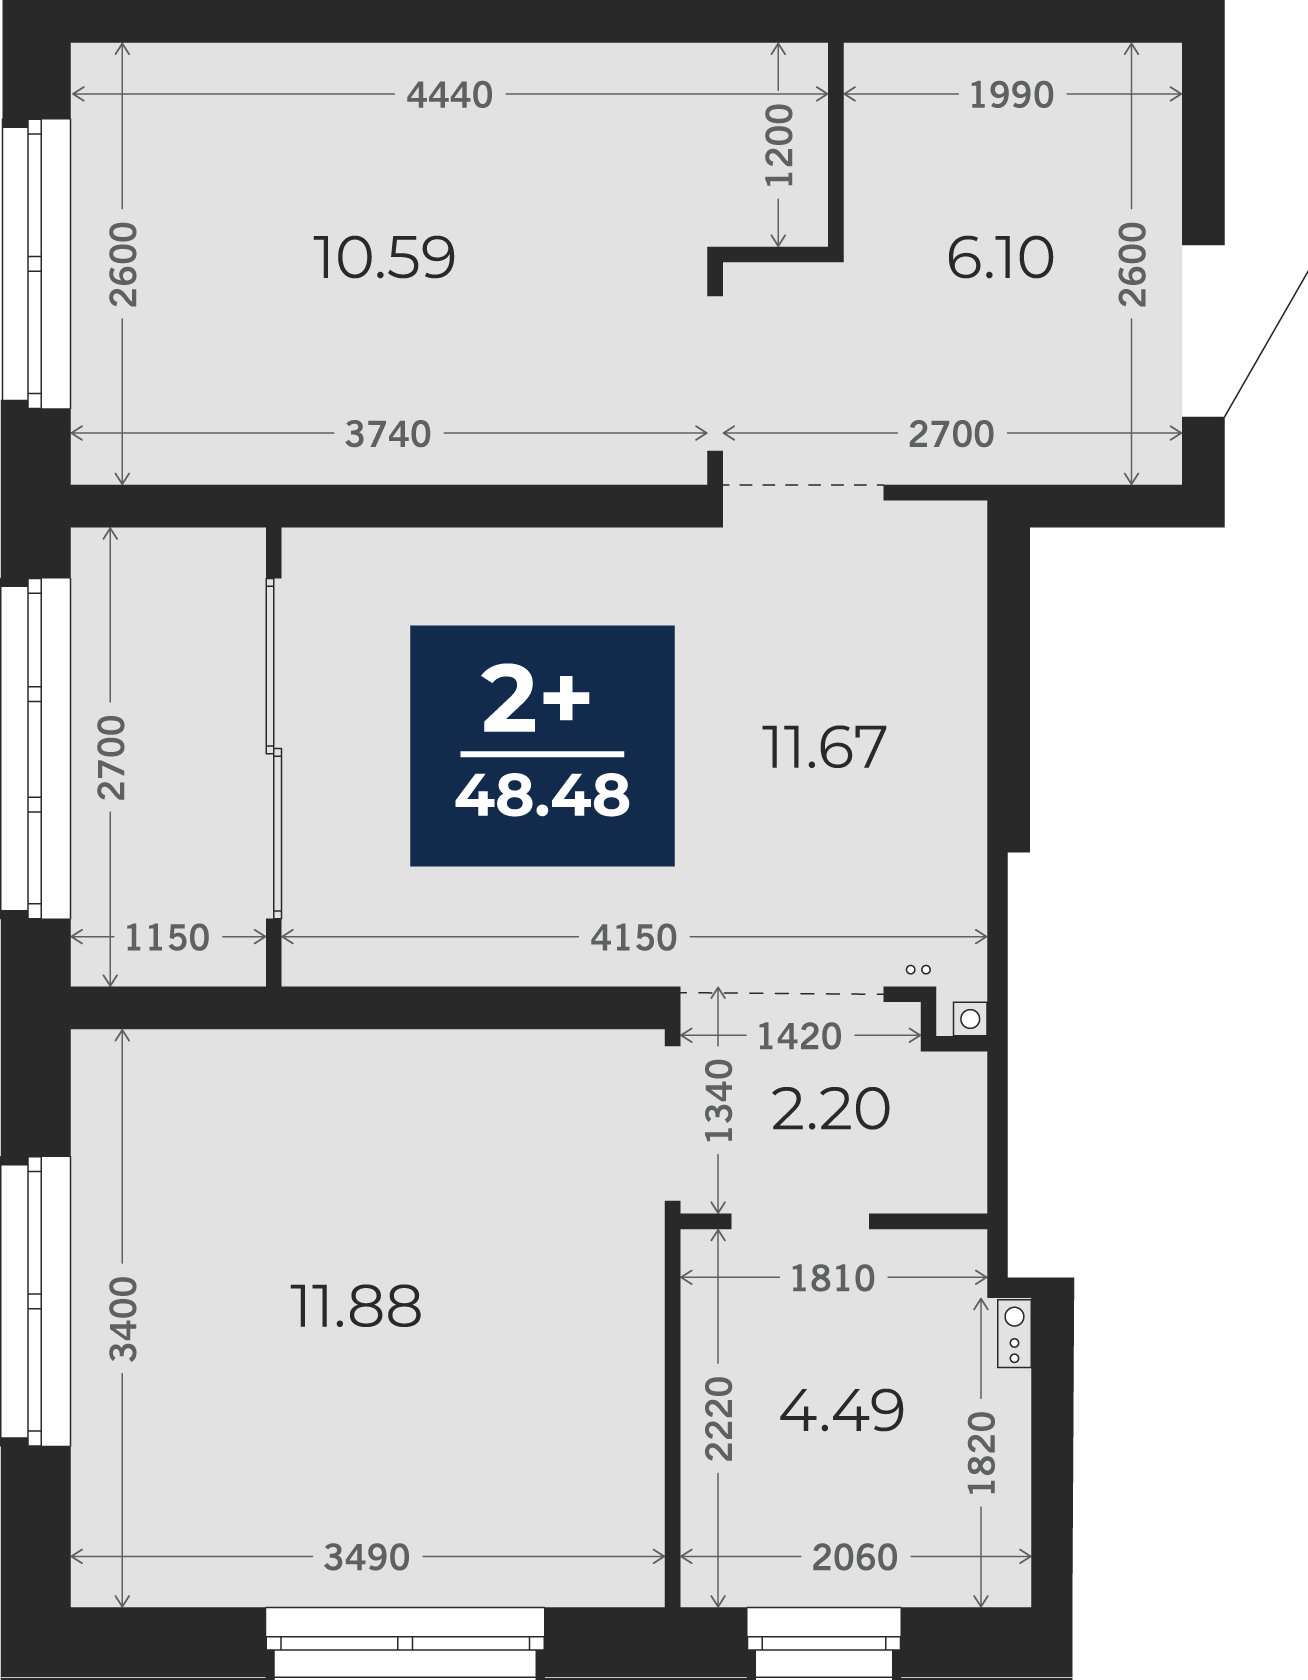 Квартира № 109, 2-комнатная, 48.48 кв. м, 12 этаж